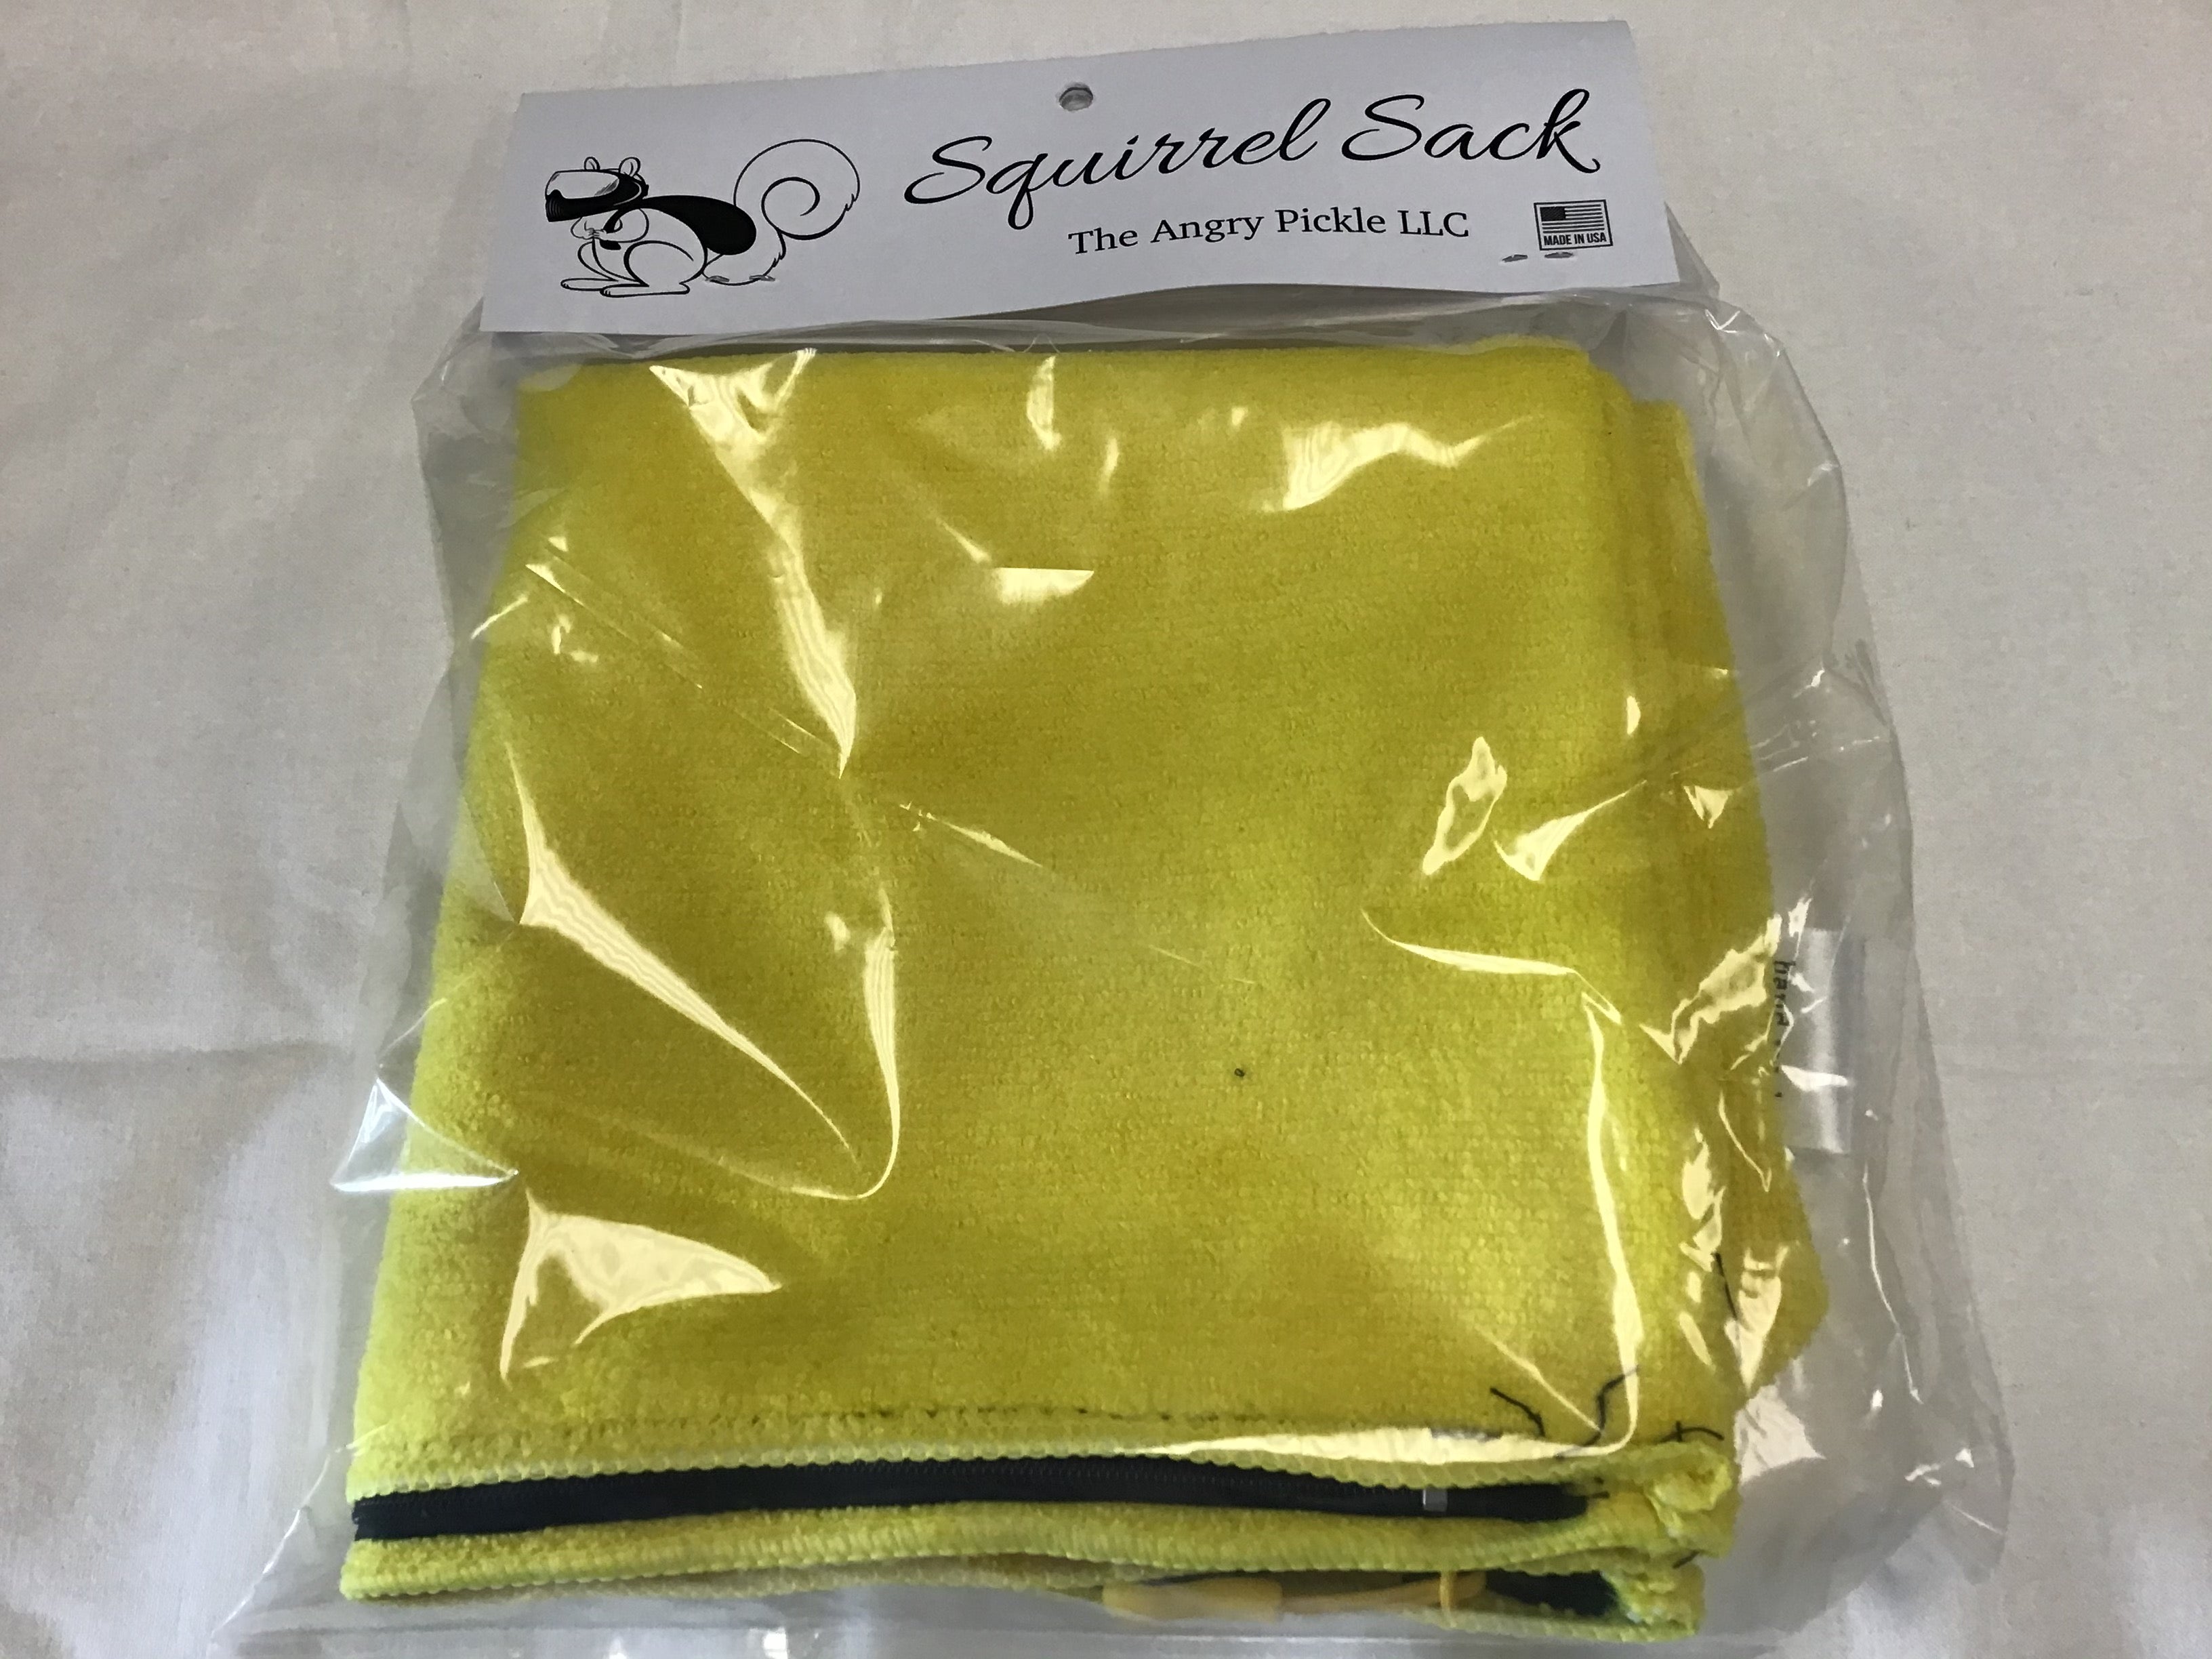 Squirrel Sack Microfiber Bag - Yellow